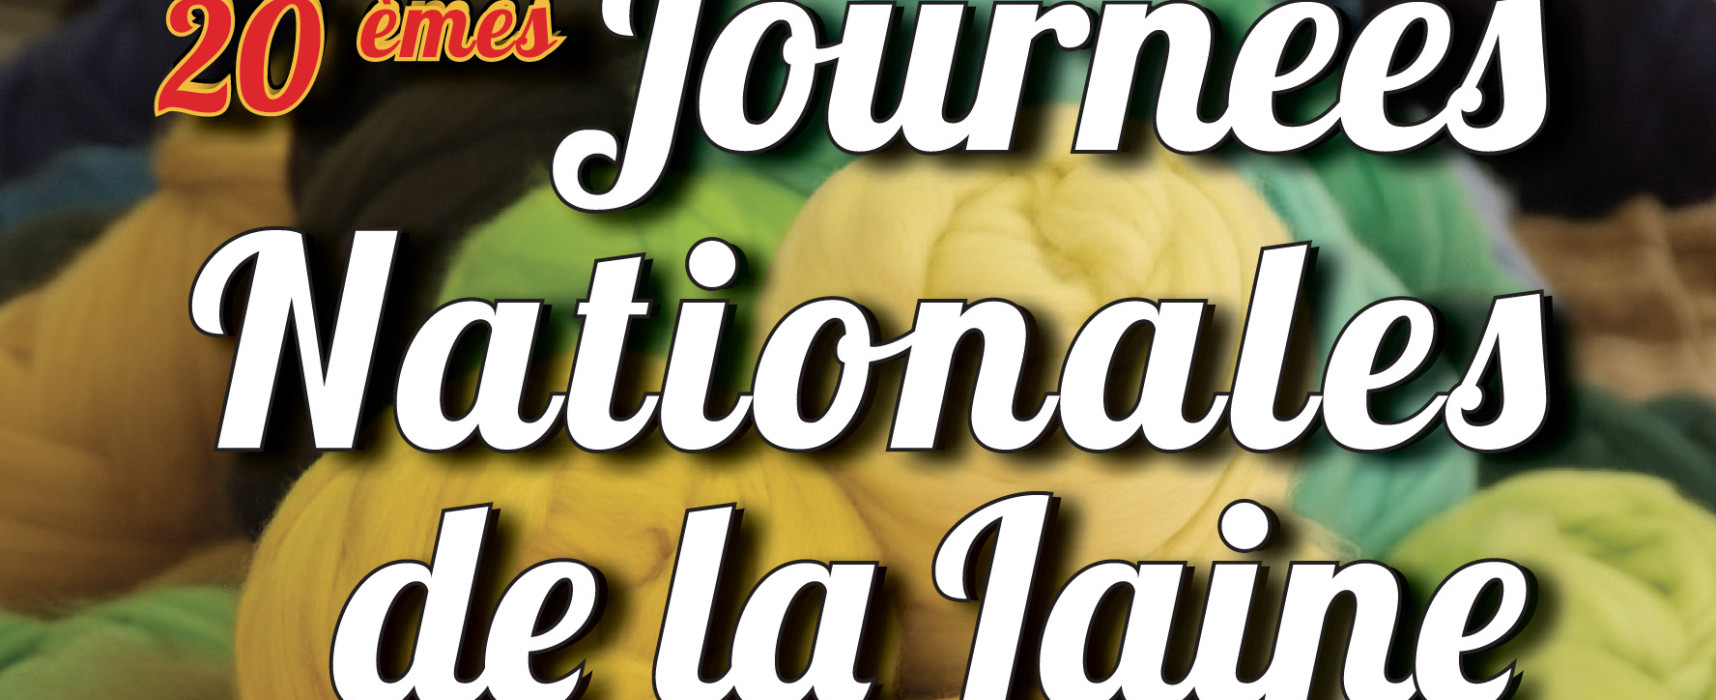 20èmes Journées Nationales de la Laine #JNL2019